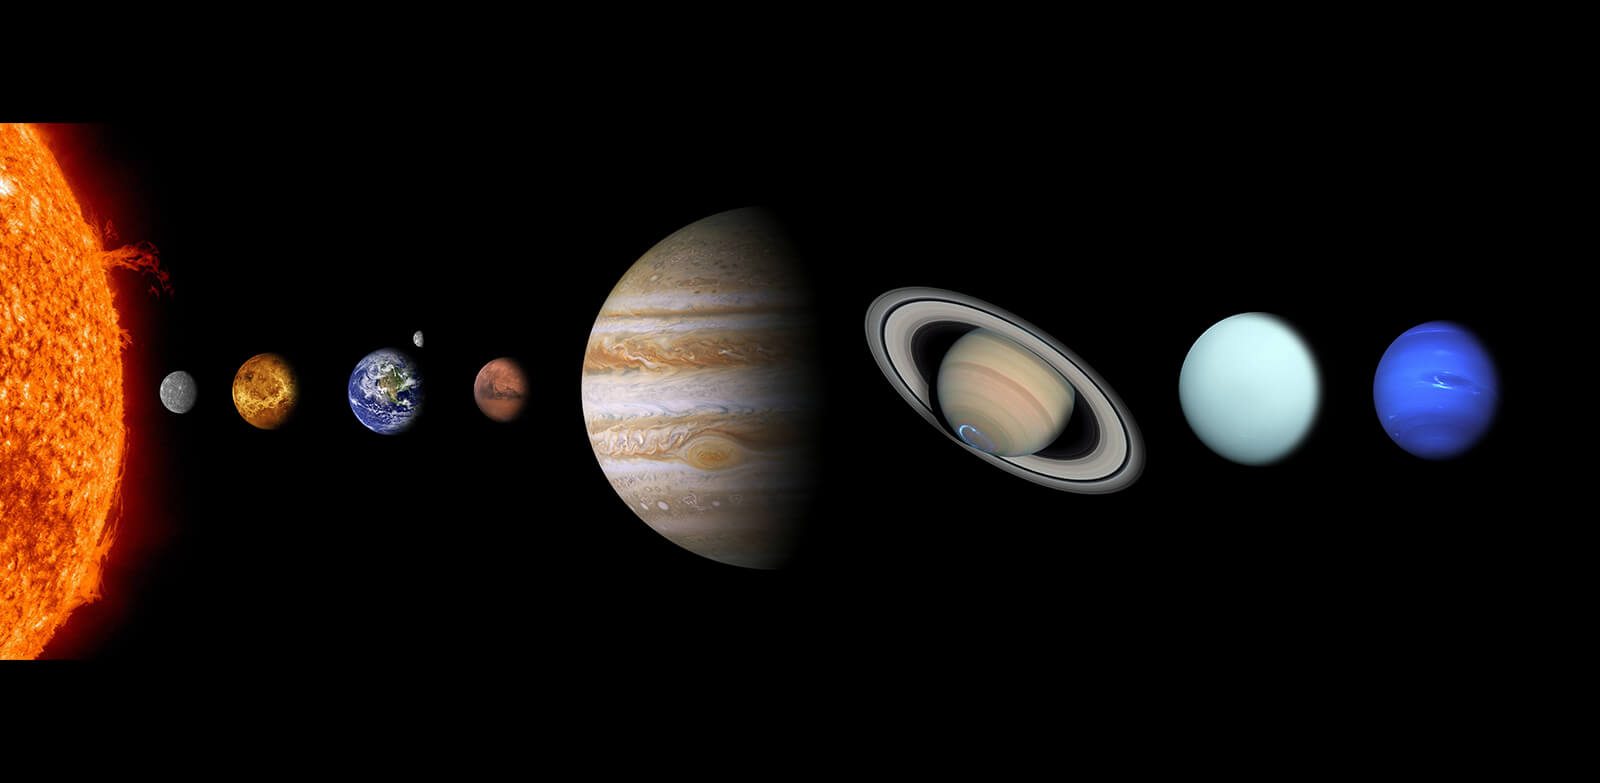 Sieben ist die Anzahl der schon frühzeitig mit bloßem Auge sichtbaren, scheinbar beweglichen 
Himmelskörper: Sonne, Mond, Merkur, Venus, Mars, Jupiter und Saturn.